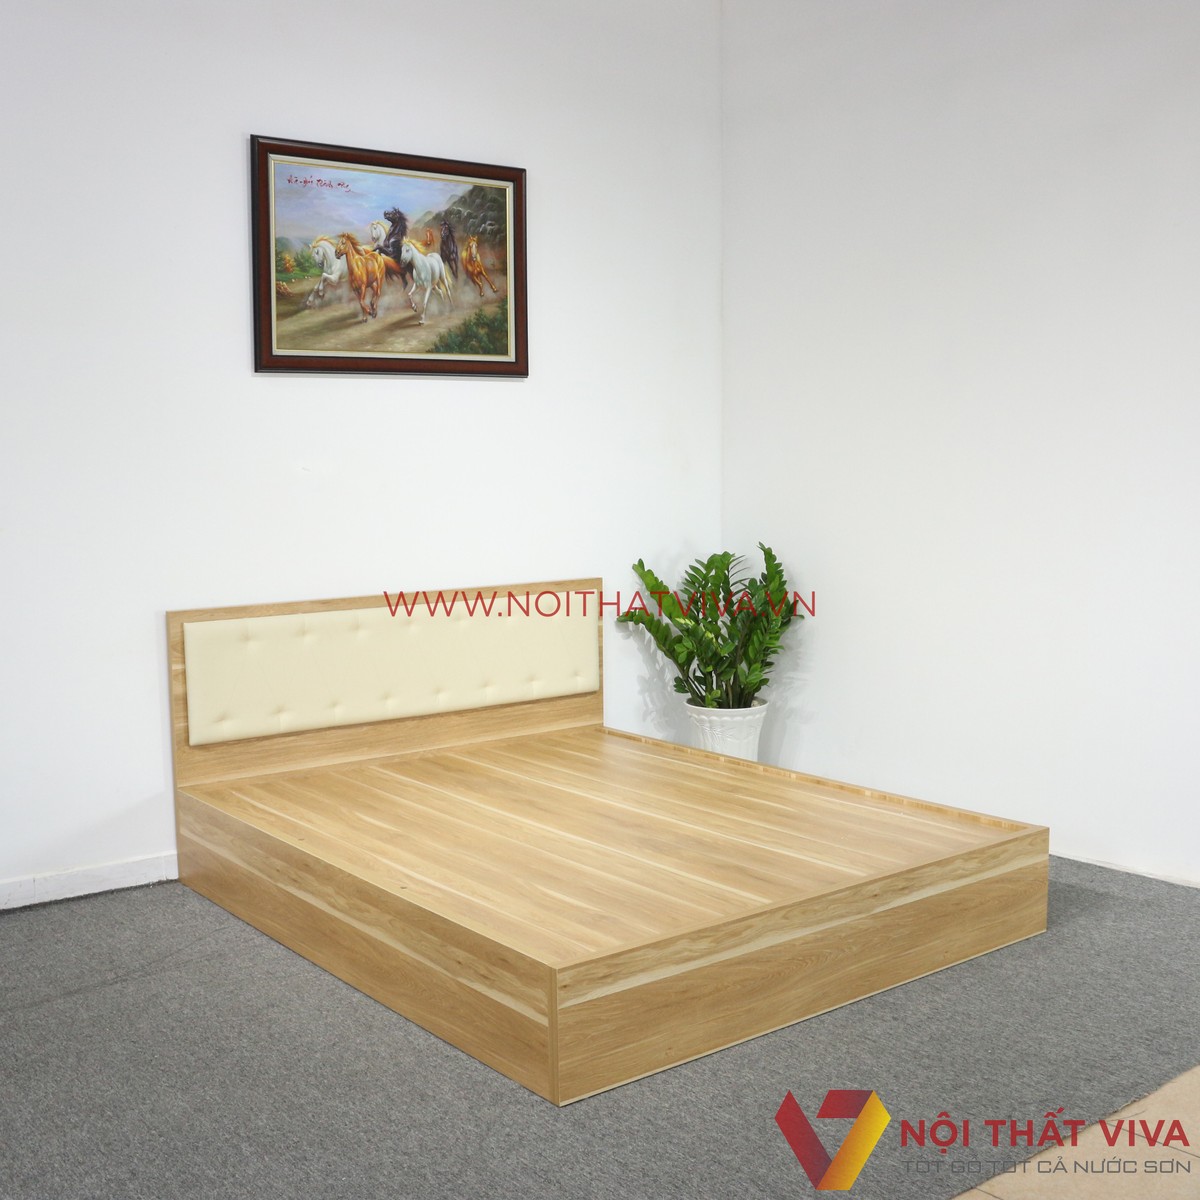 Bộ sưu tập những mẫu giường ngủ gỗ 1m2 đẹp, hiện đại, giá rẻ mới nhất